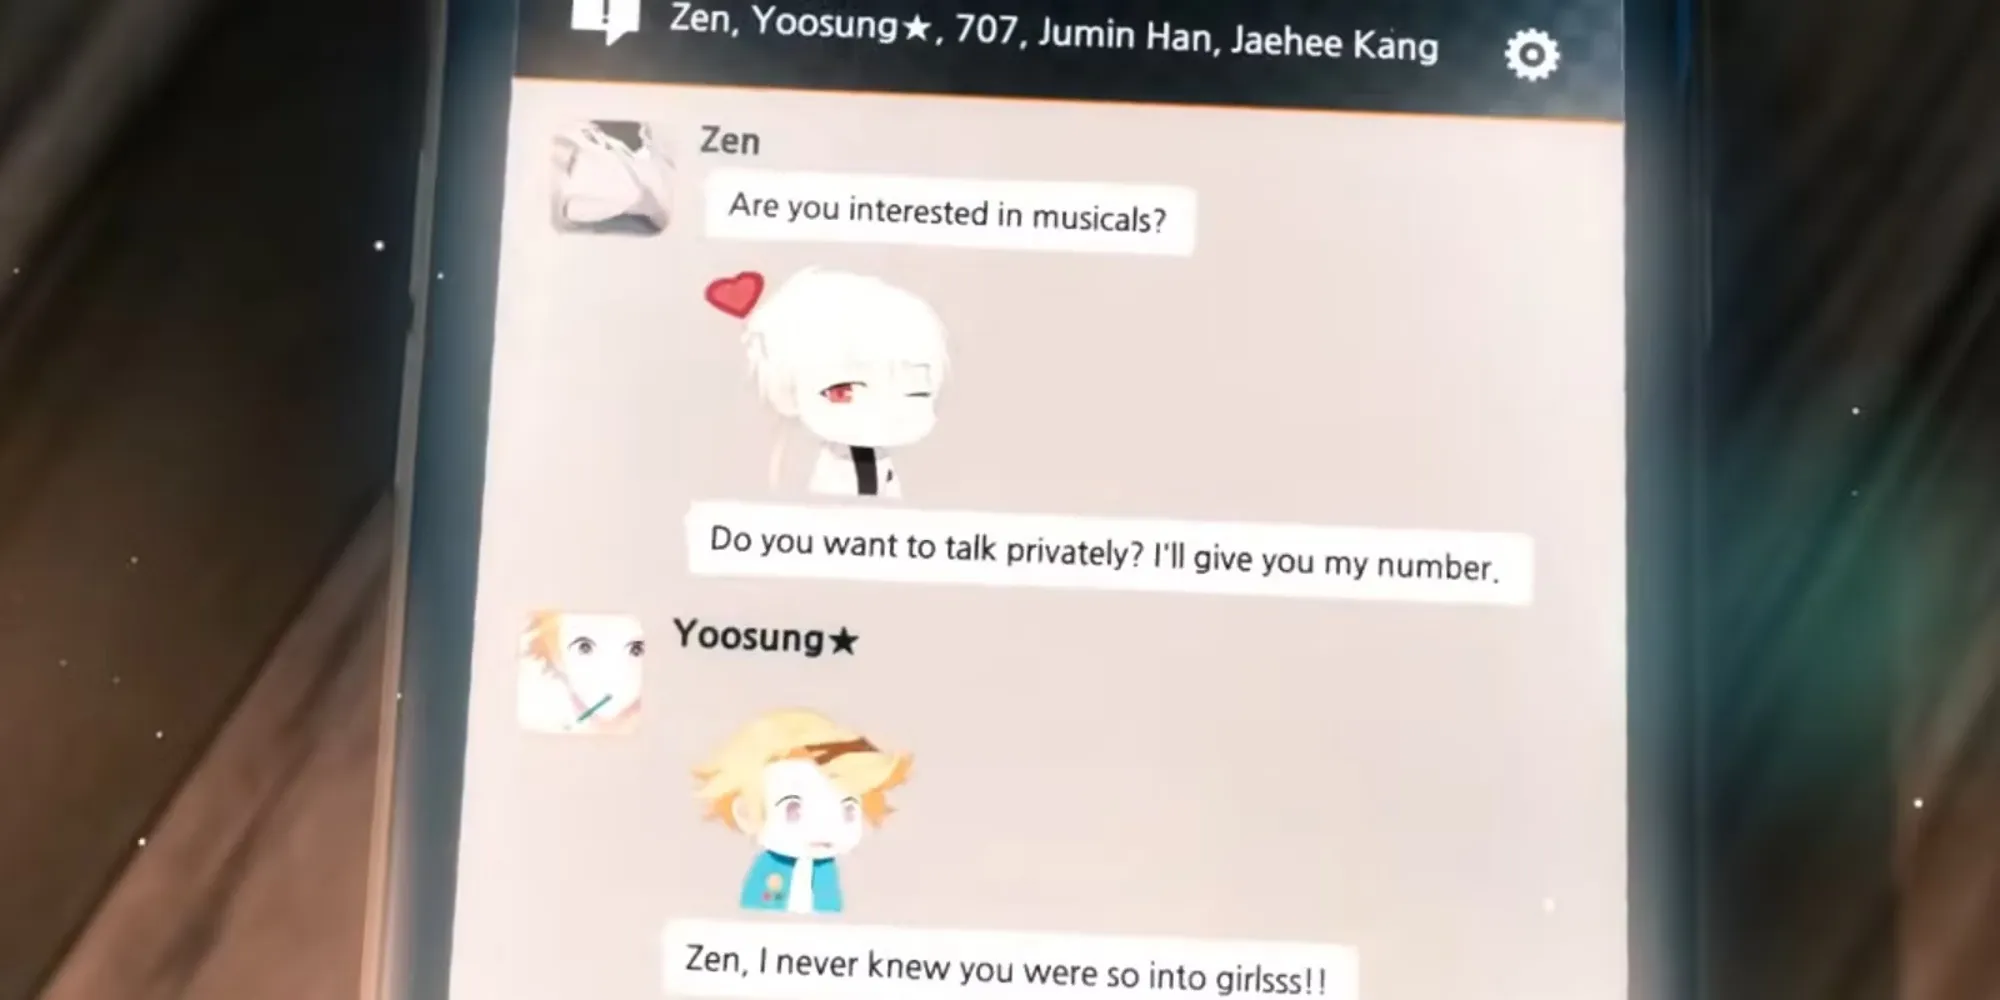 giocatore in chat con zen e yoosung che parlano